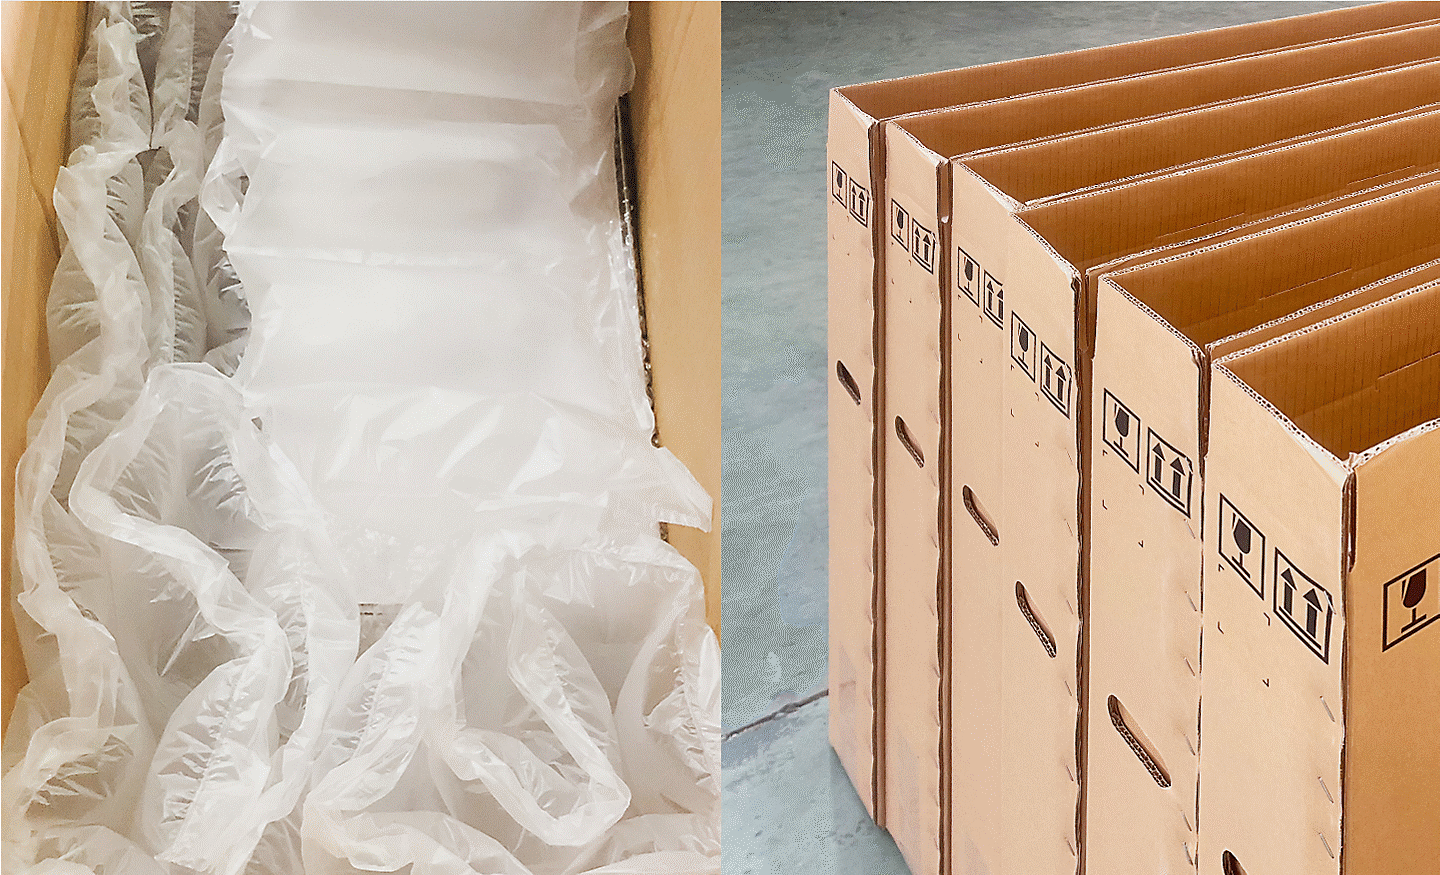 Slike amortizirajućih zračnih jastuka (lijevo) i ponovno upotrijebljeni sekundarni materijali koji se upotrebljavaju u proizvodnji kartonske ambalaže (desno)